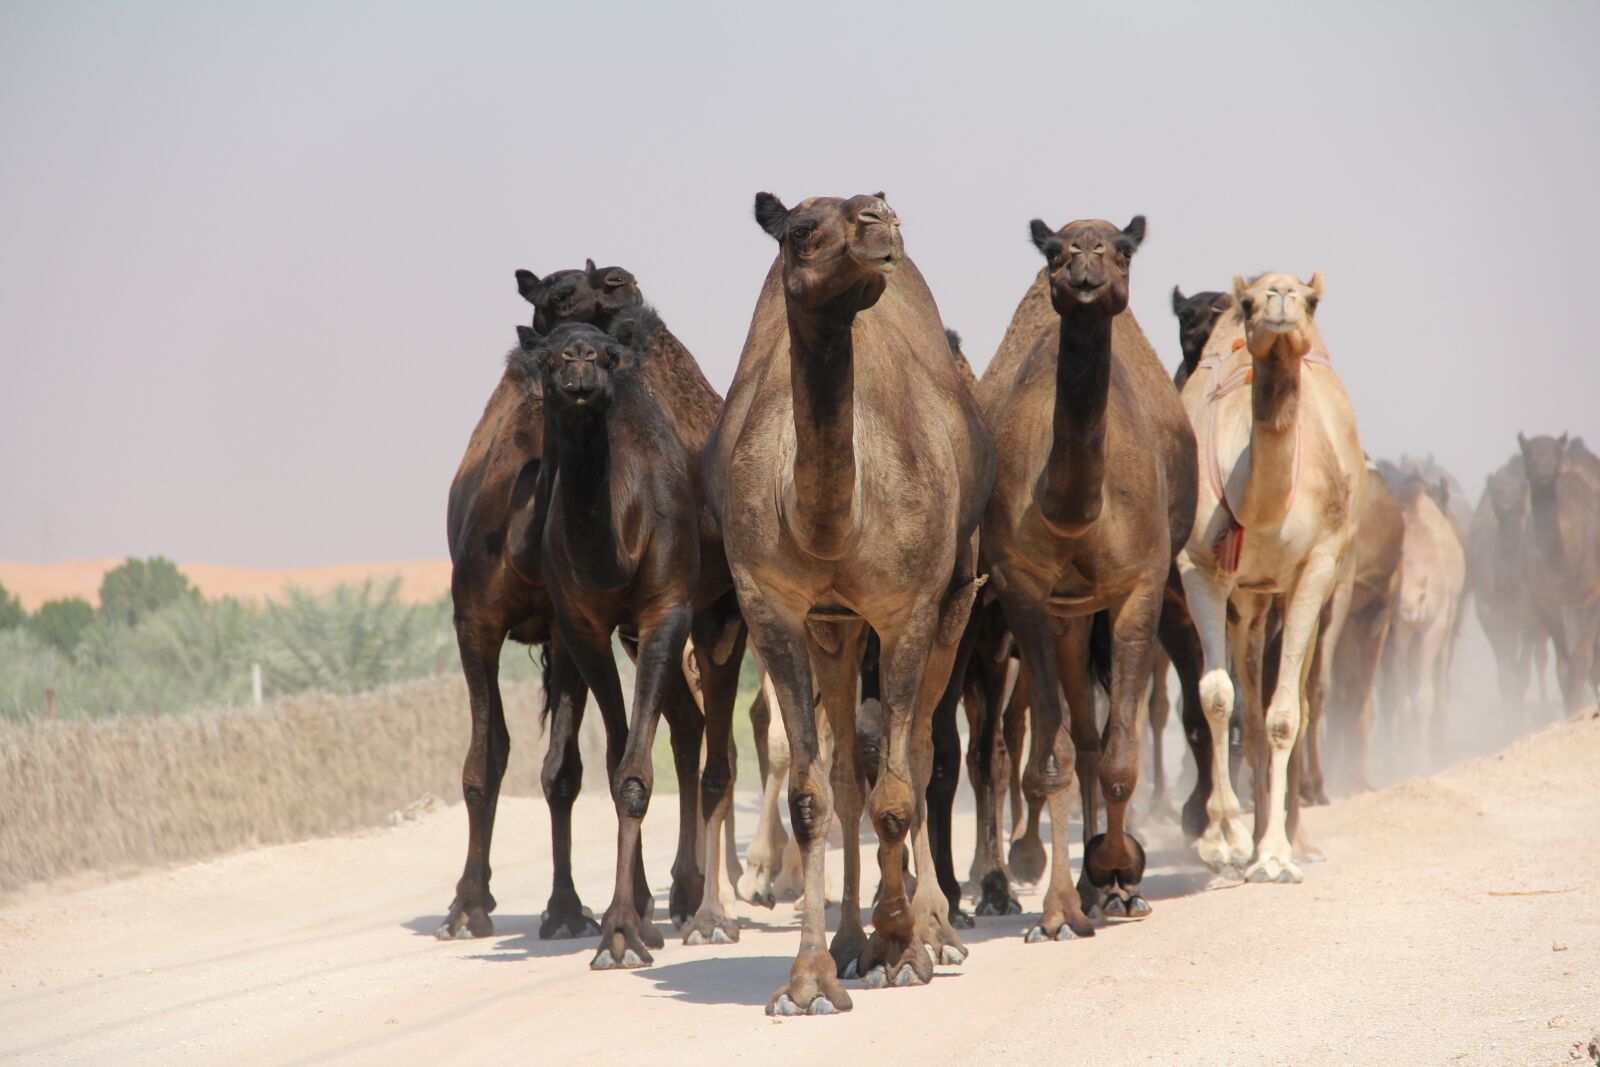 Canon EOS 60D sample photo. Camel, egypt, desert photography